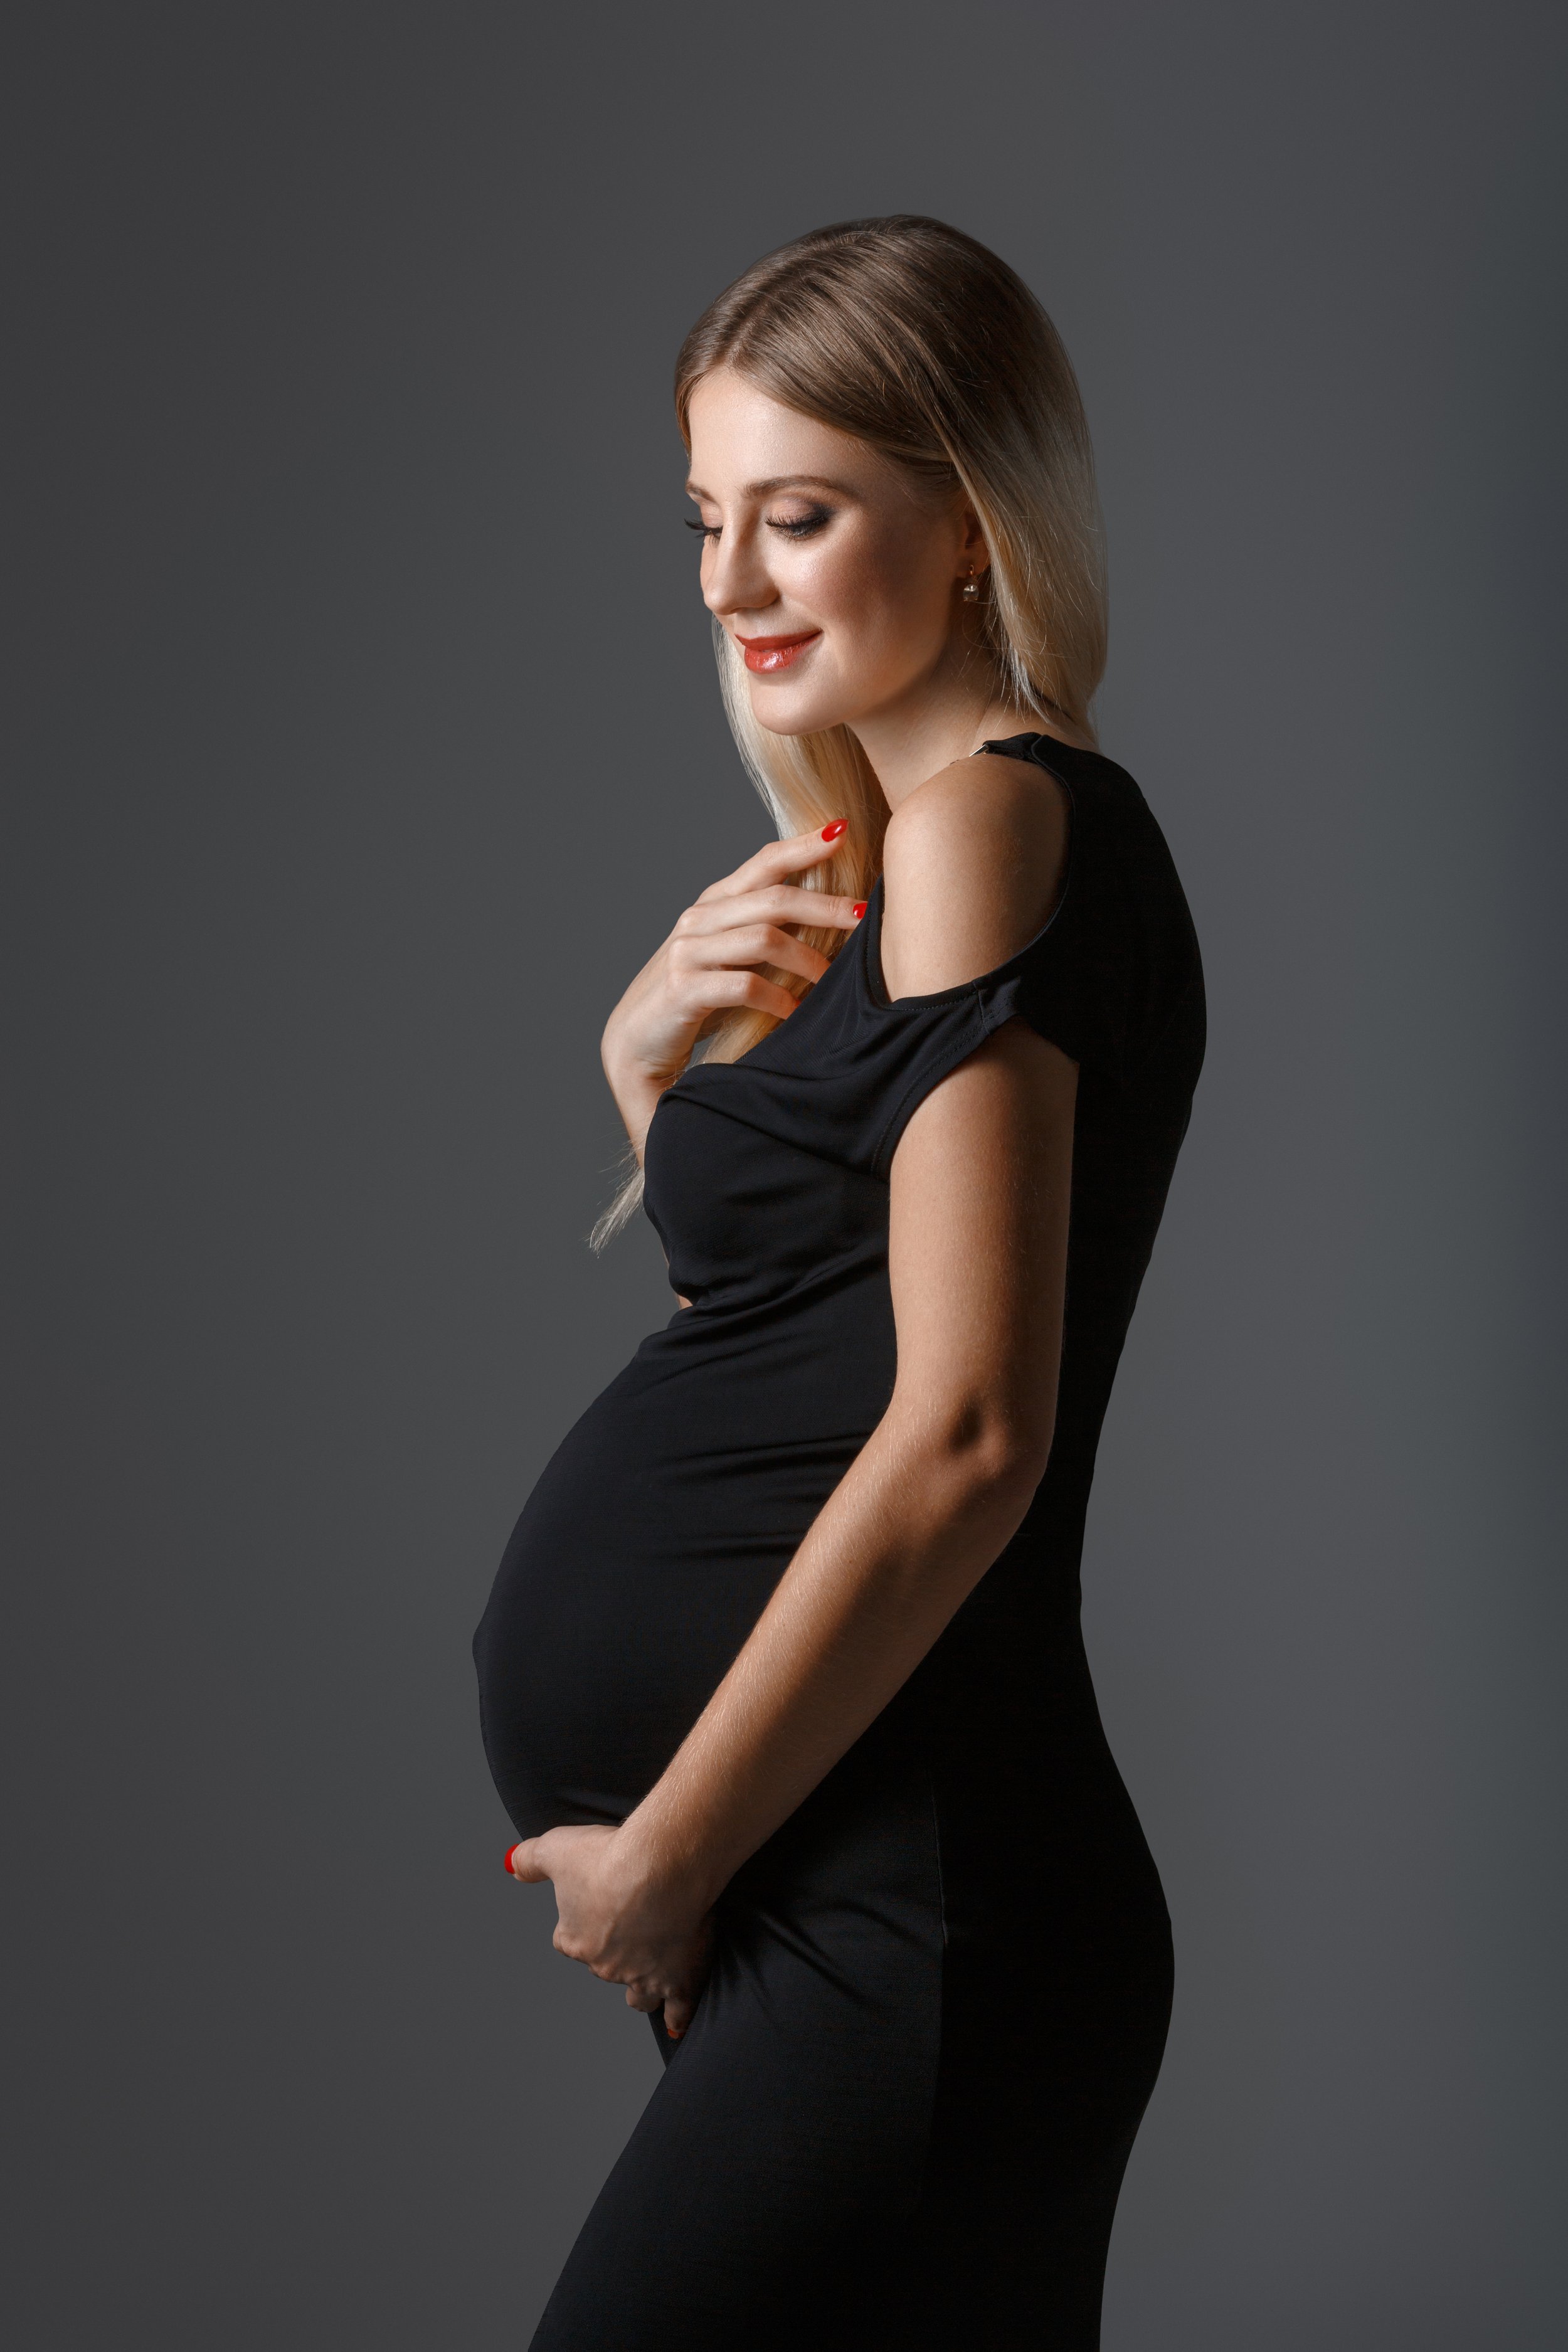 beautiful-pregnant-woman-2021-08-26-17-12-15-utc.jpg